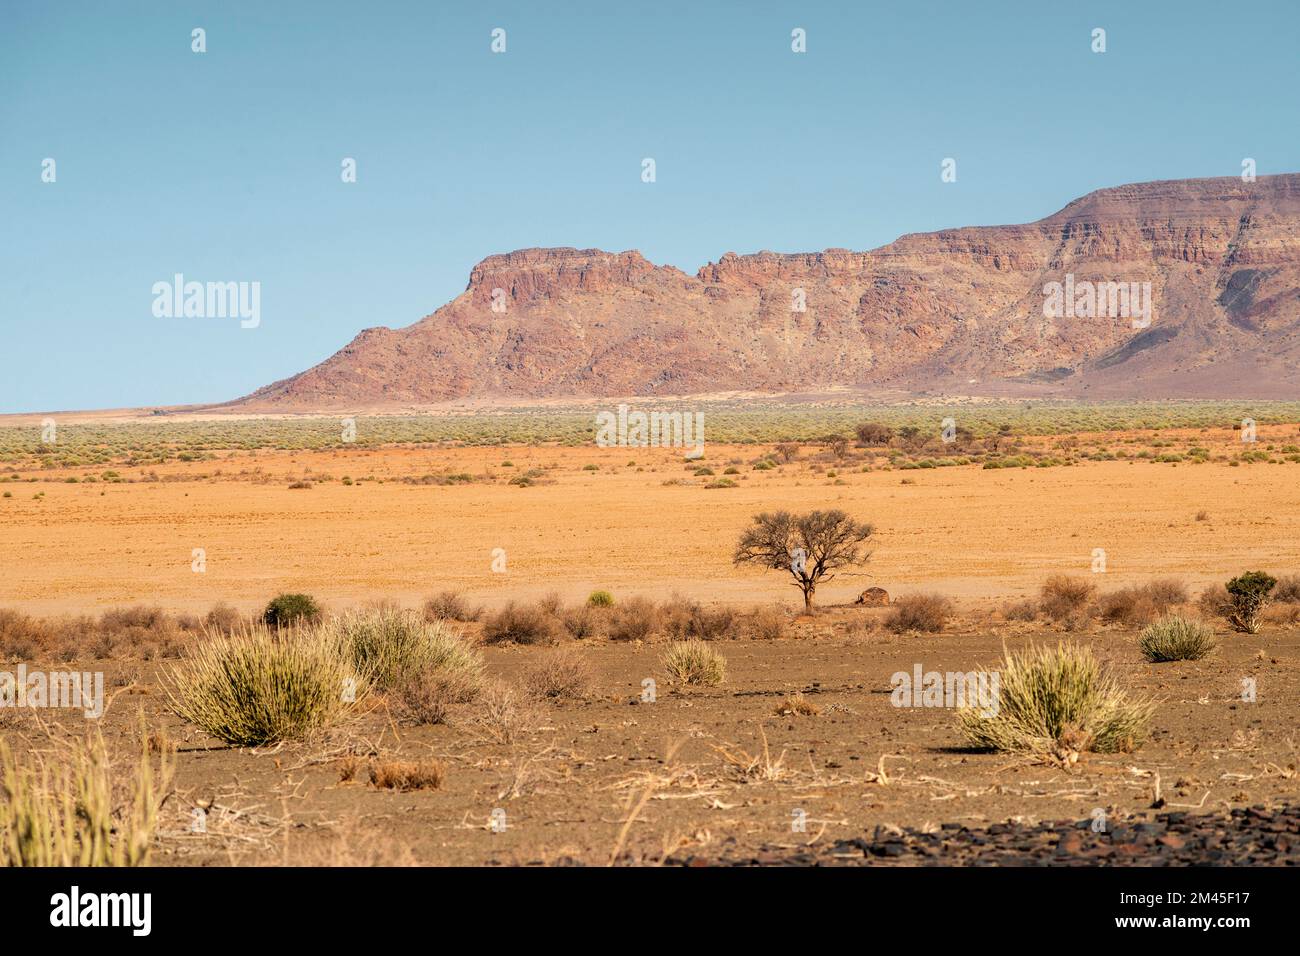 Namibia desert landscape with distant mountain ridge Stock Photo